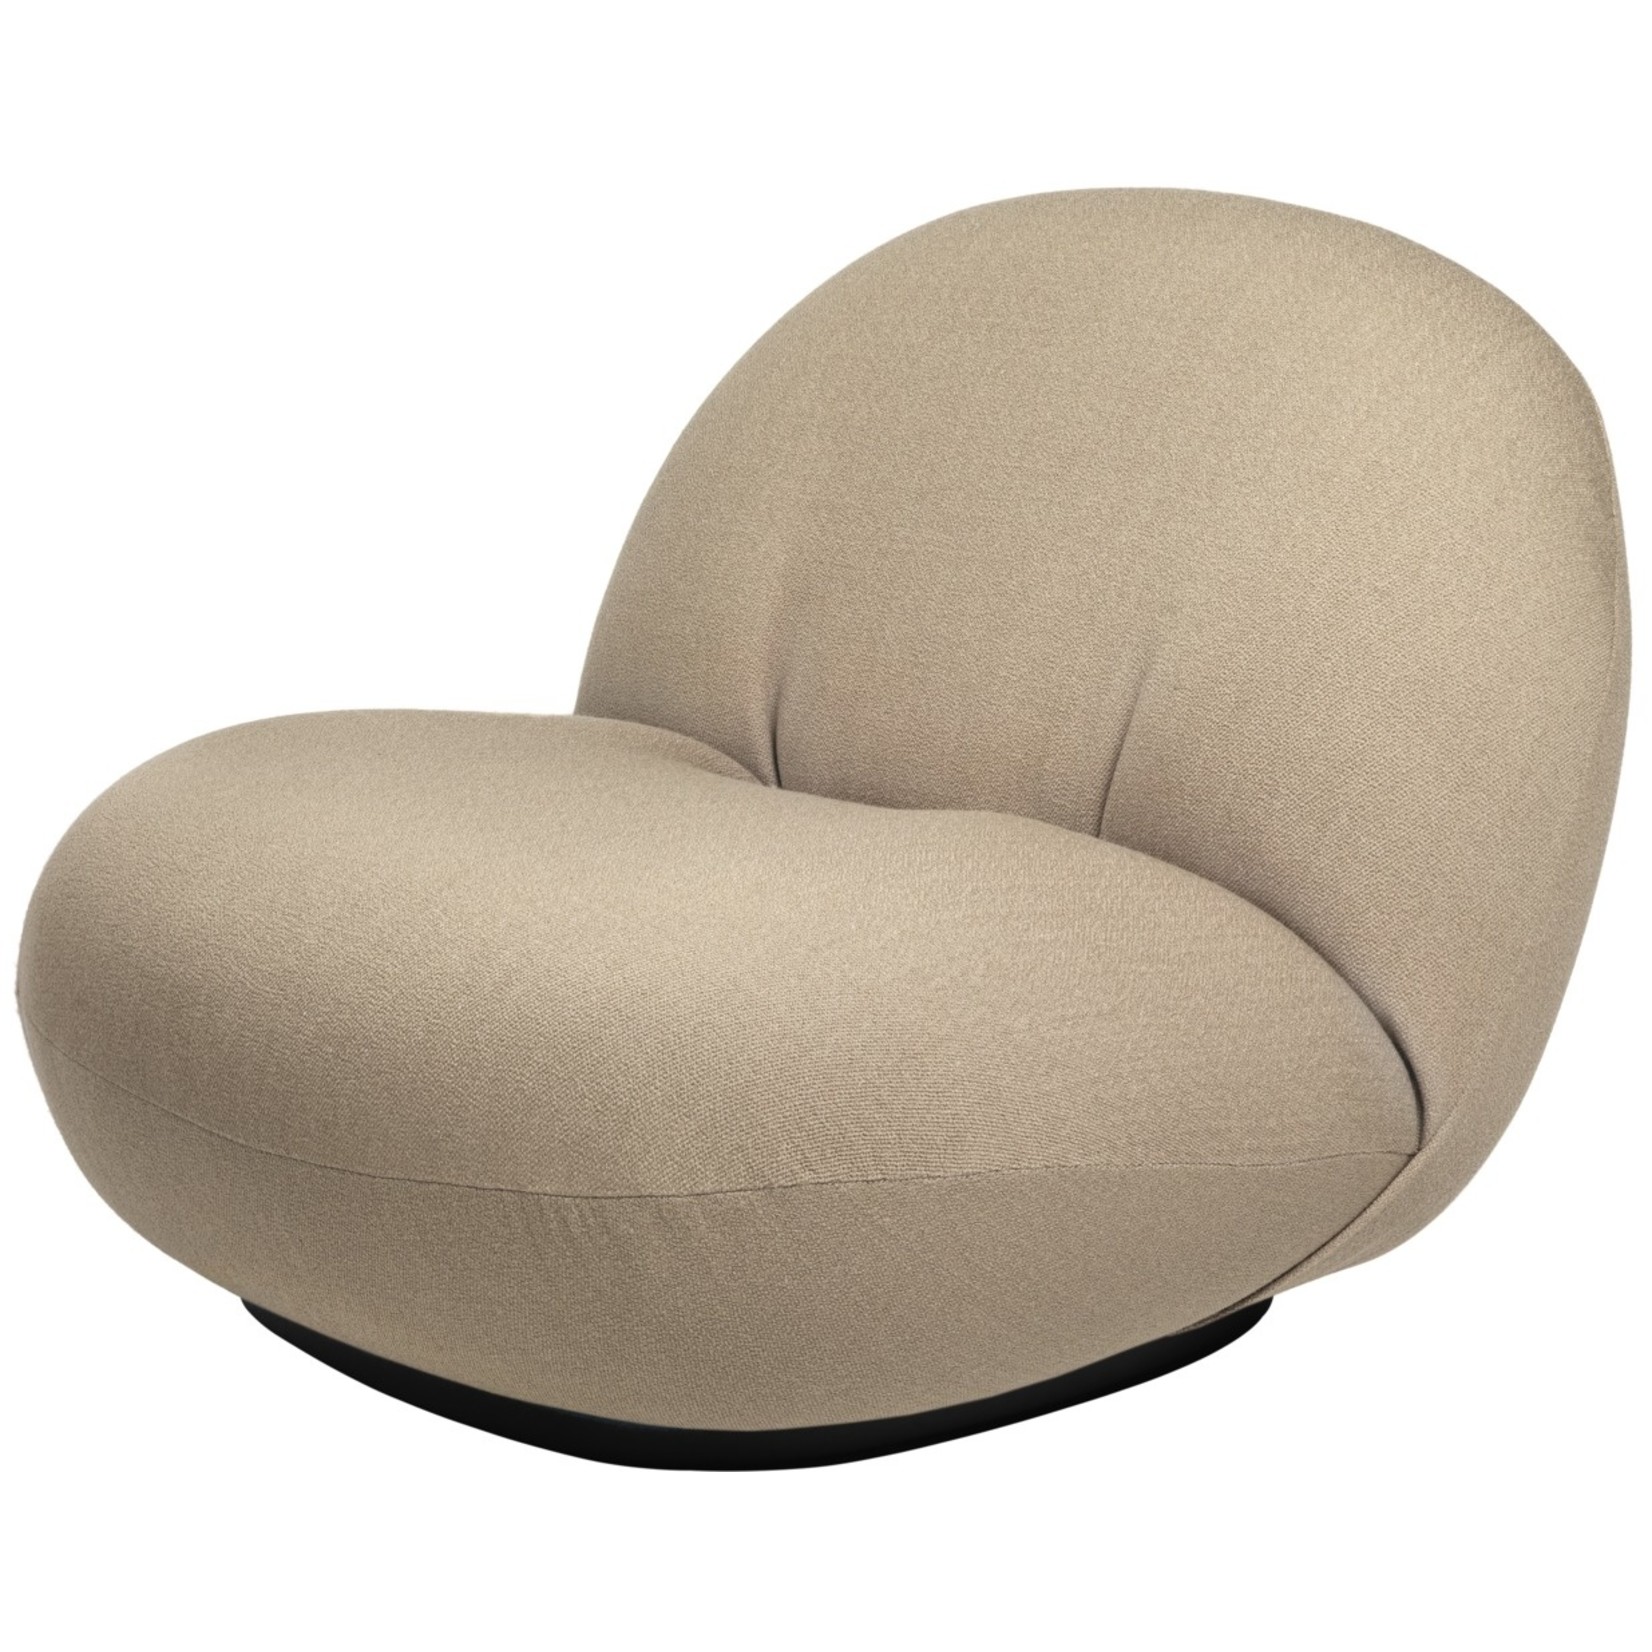 Gubi Pacha Lounge Chair | Fully Upholstered Vidar & Black Semi Matt Base, Returning Swivel